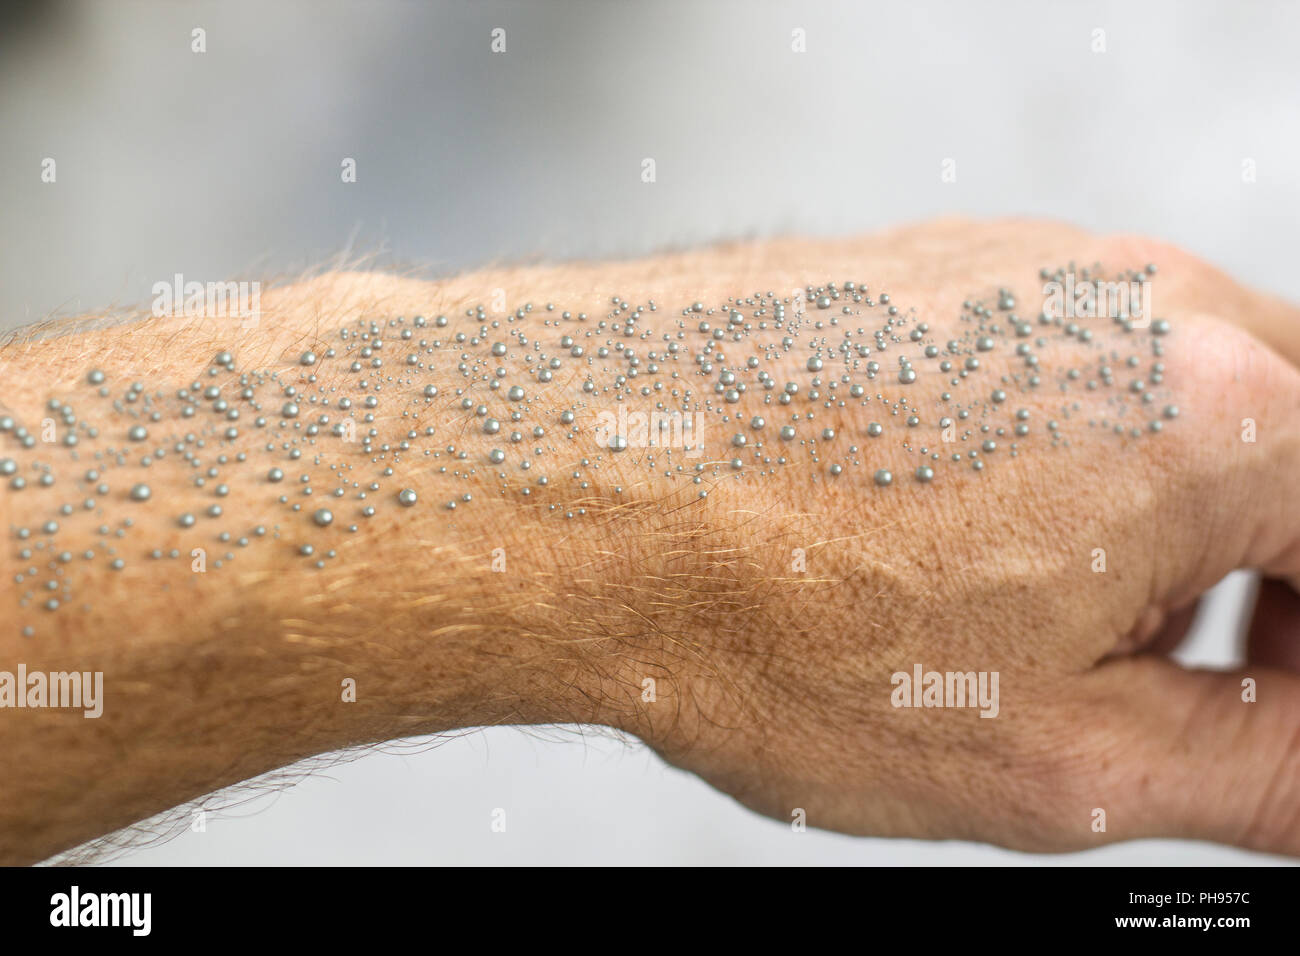 Les nanoparticules rendu visible sur la peau humaine - le rendu 3D Banque D'Images